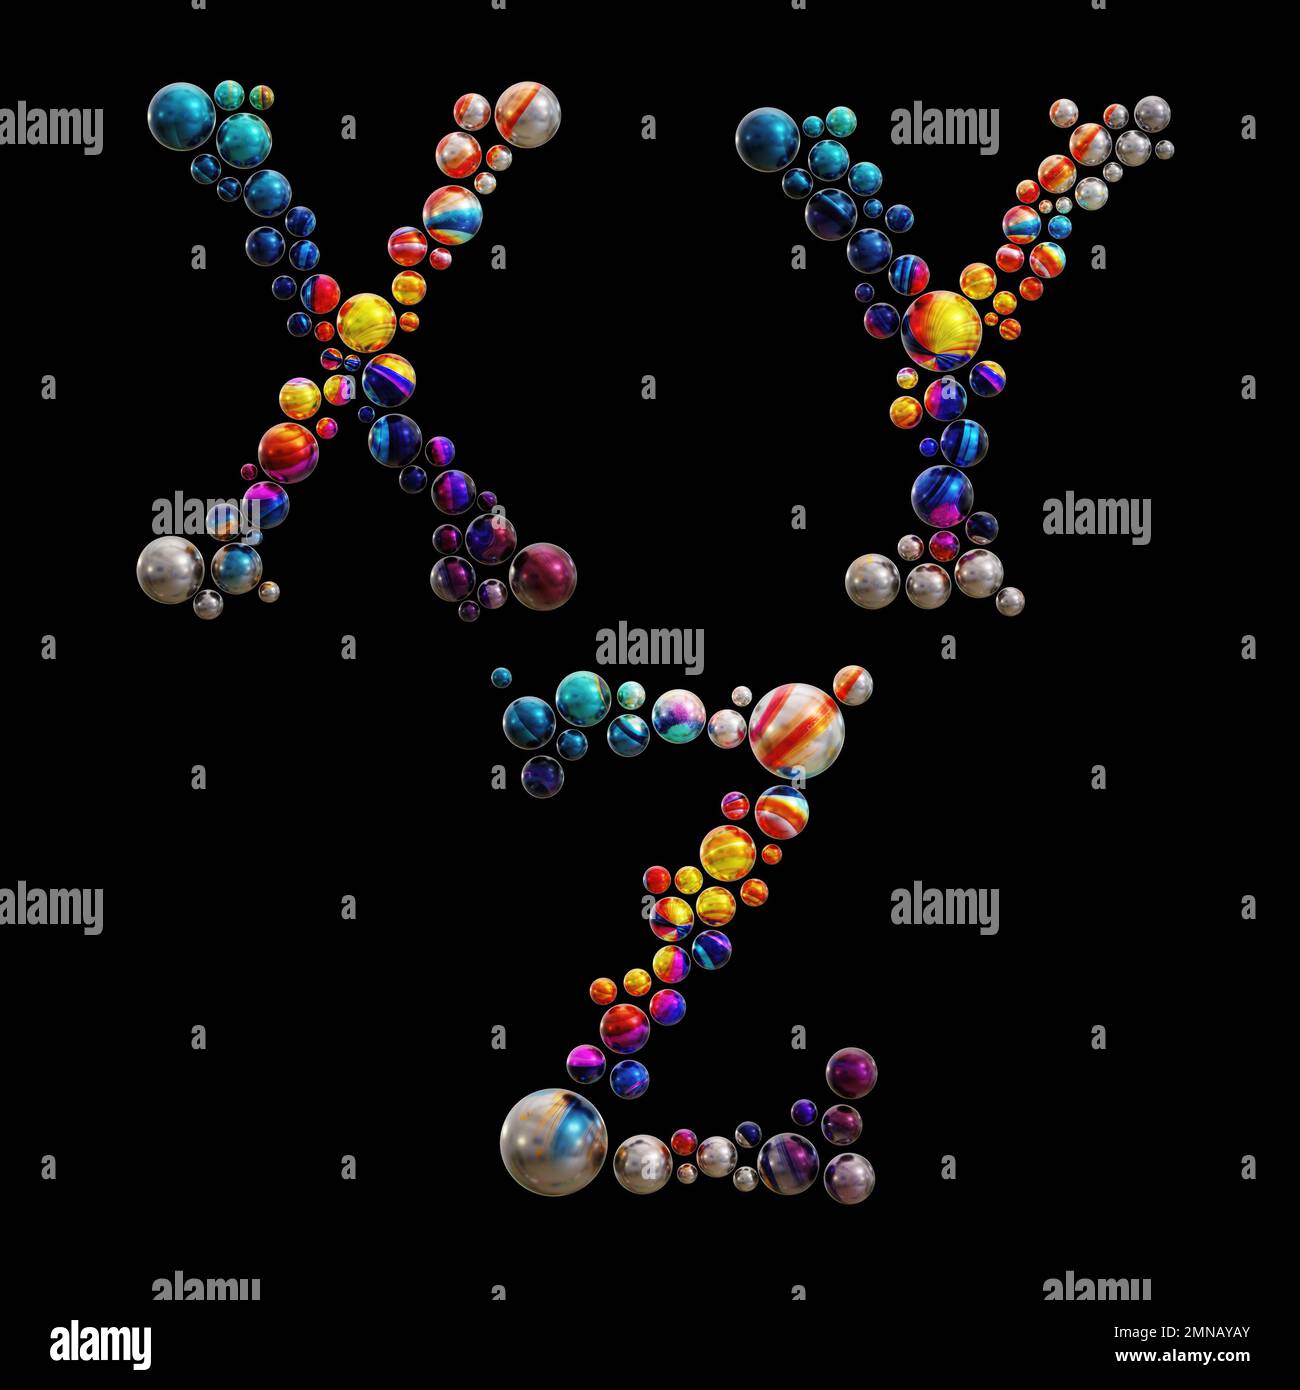 3D-Wiedergabe von farbigen Punktalphabeten - Buchstaben X-Z Stockfoto